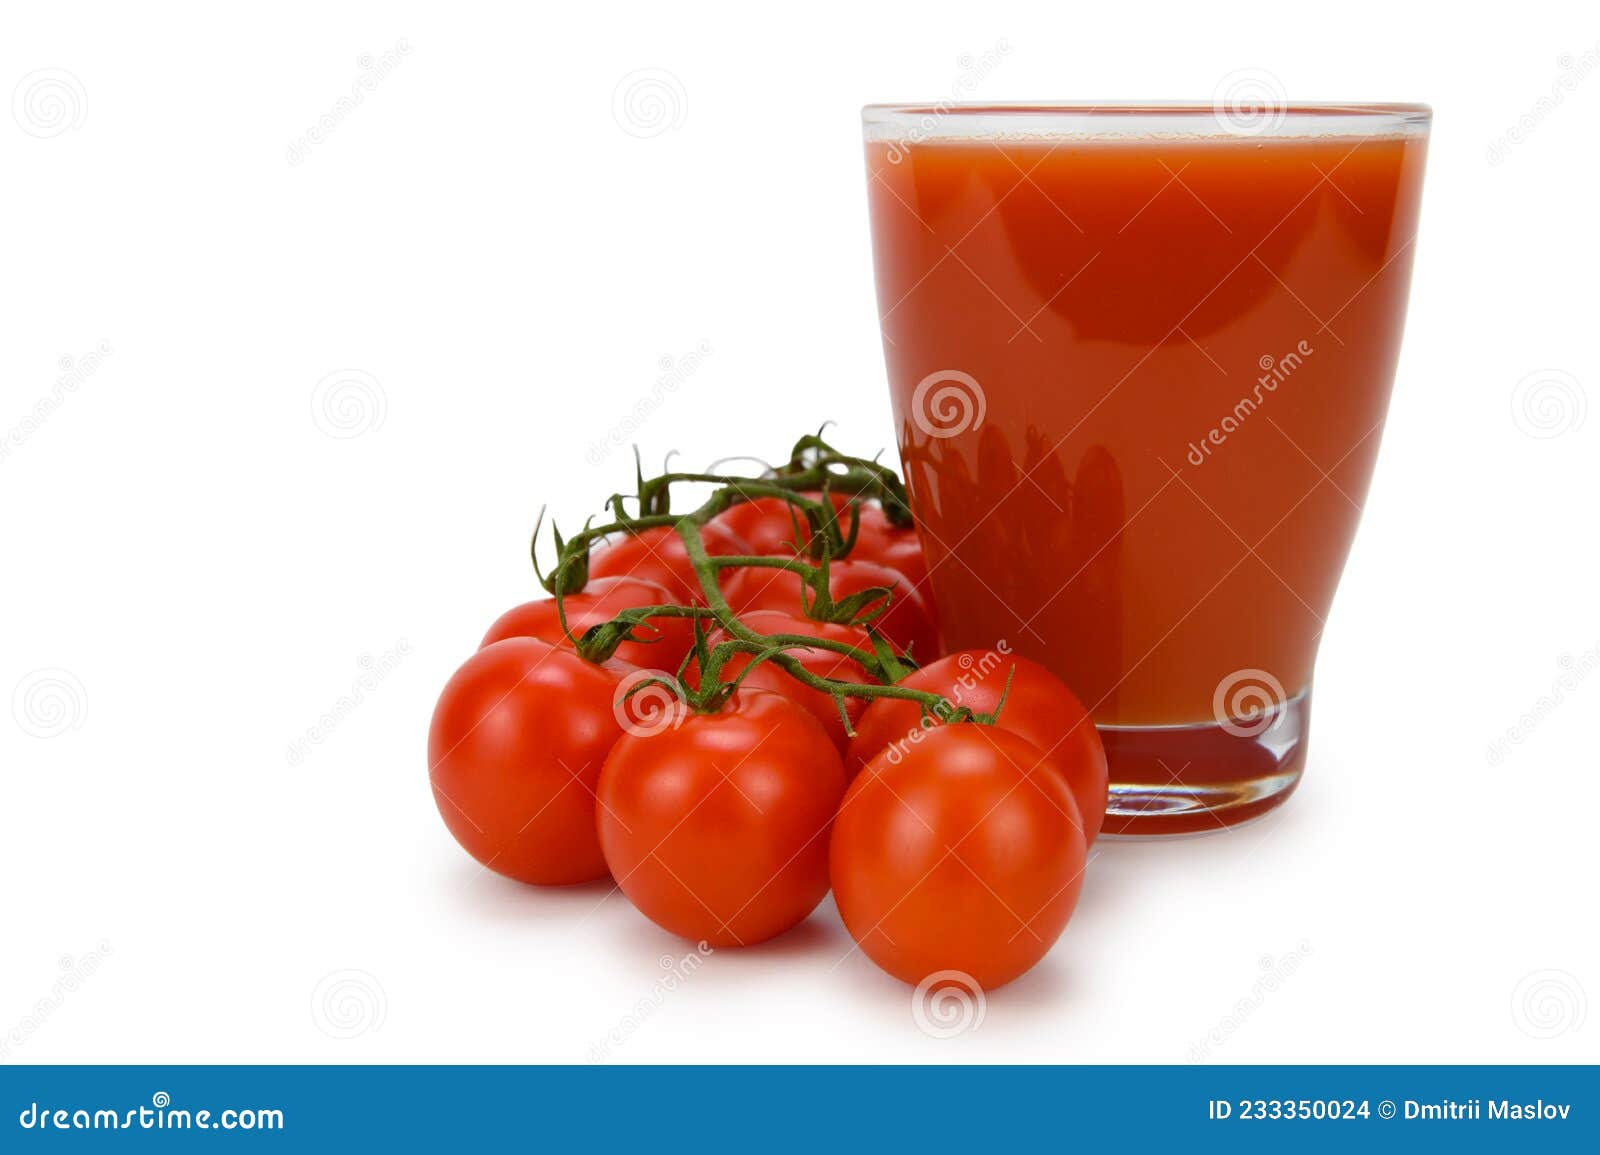 一杯番茄汁和一些熟番茄, 立方體, 番茄, 巨集向量圖案素材免費下載，PNG，EPS和AI素材下載 - Pngtree